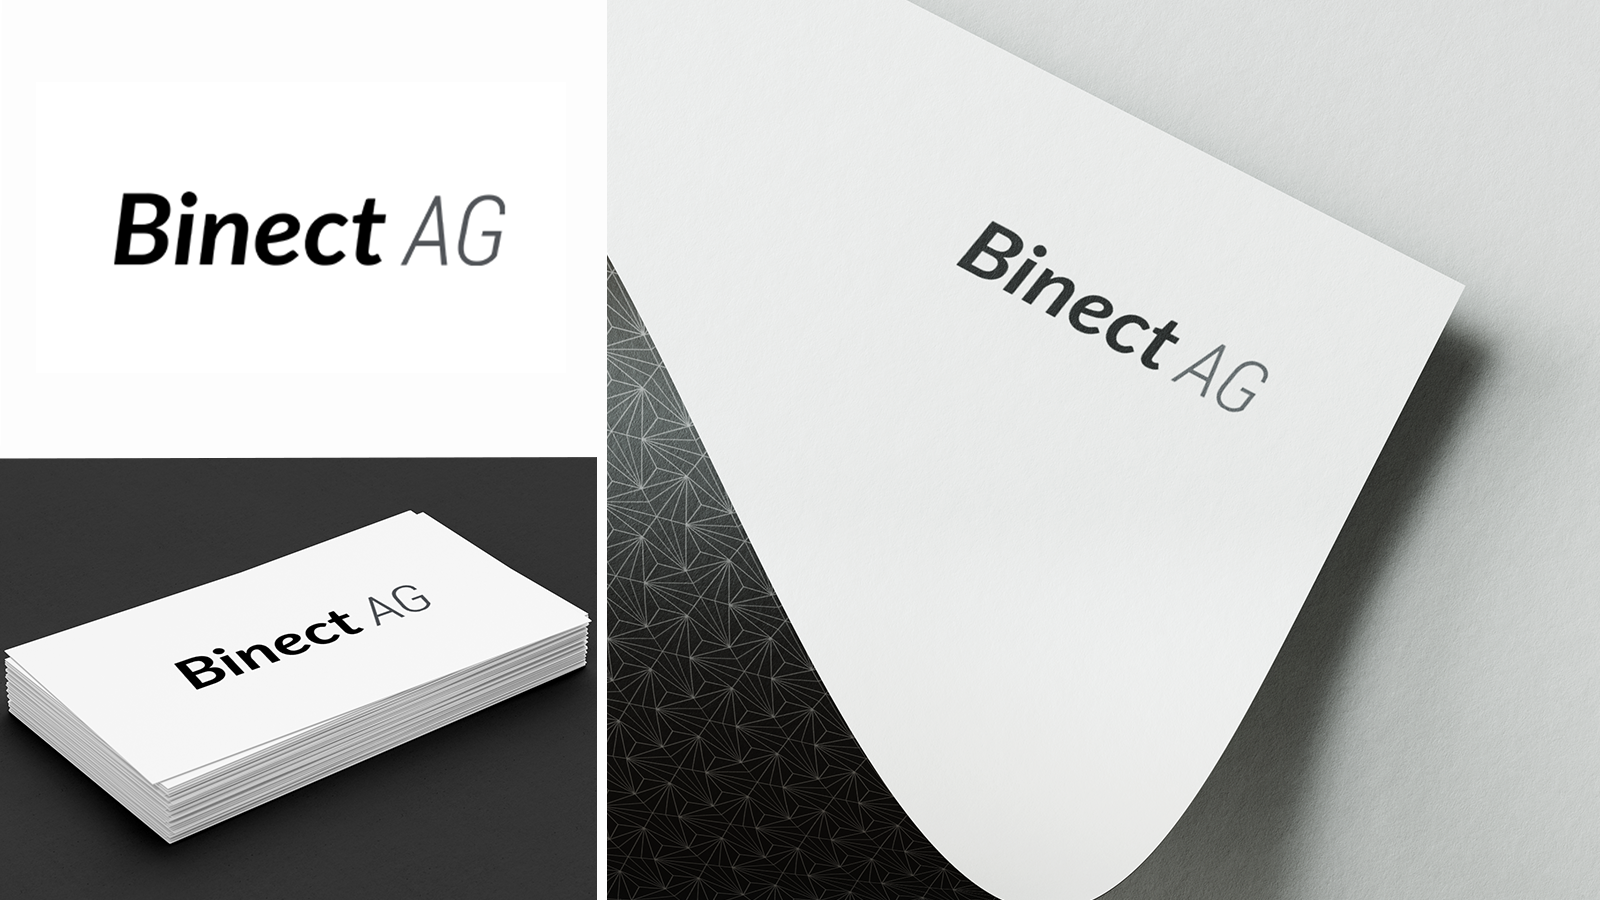 Binnect AG